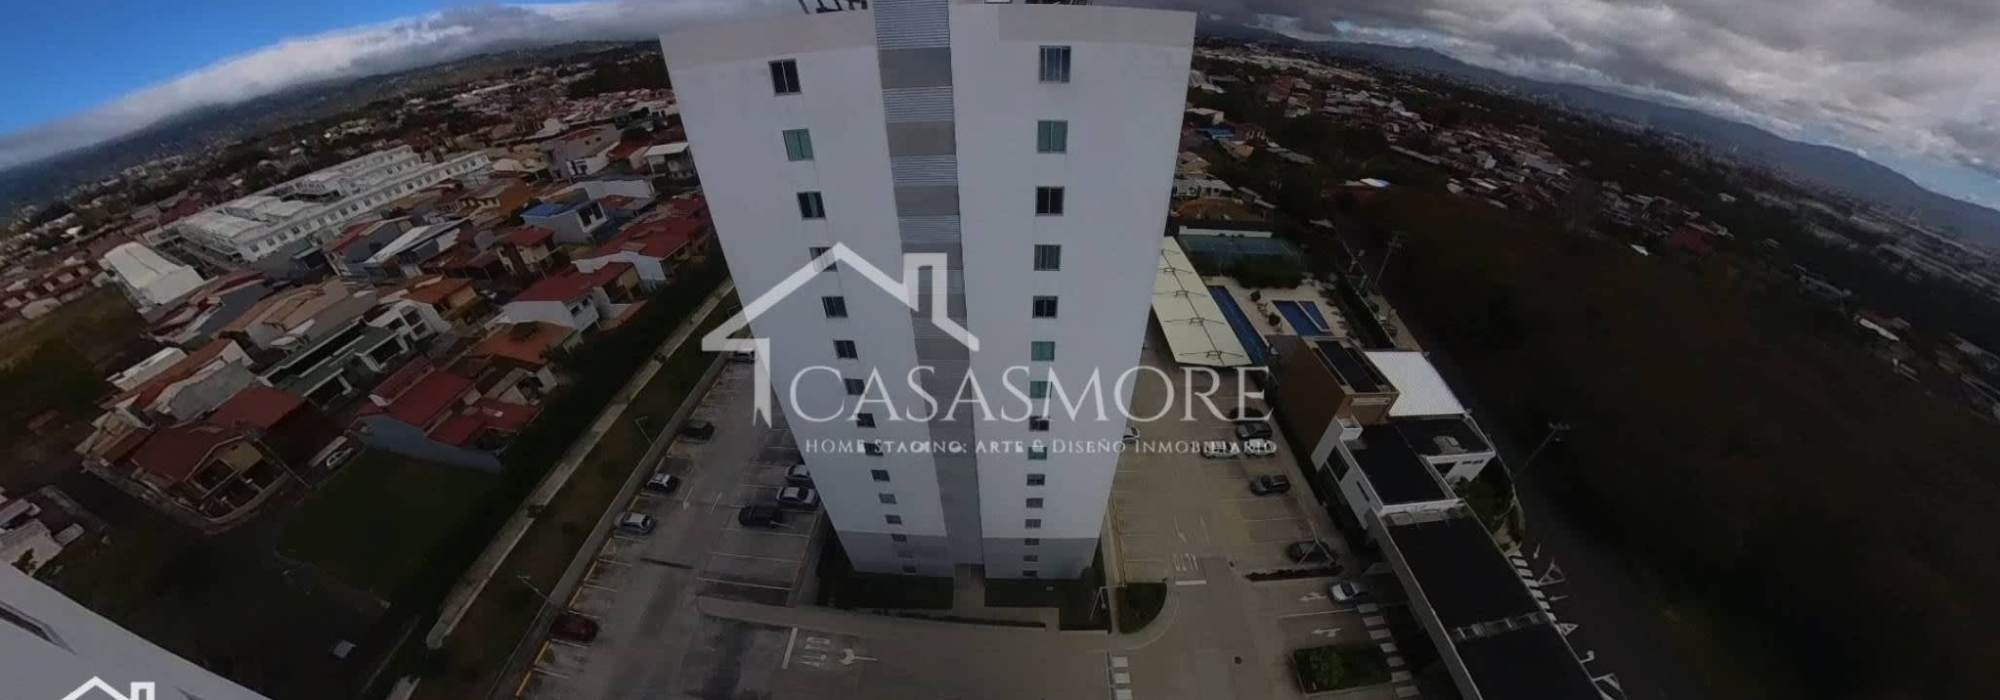 CasasMore: Homestaging, Arte y Diseño Inmobiliario®